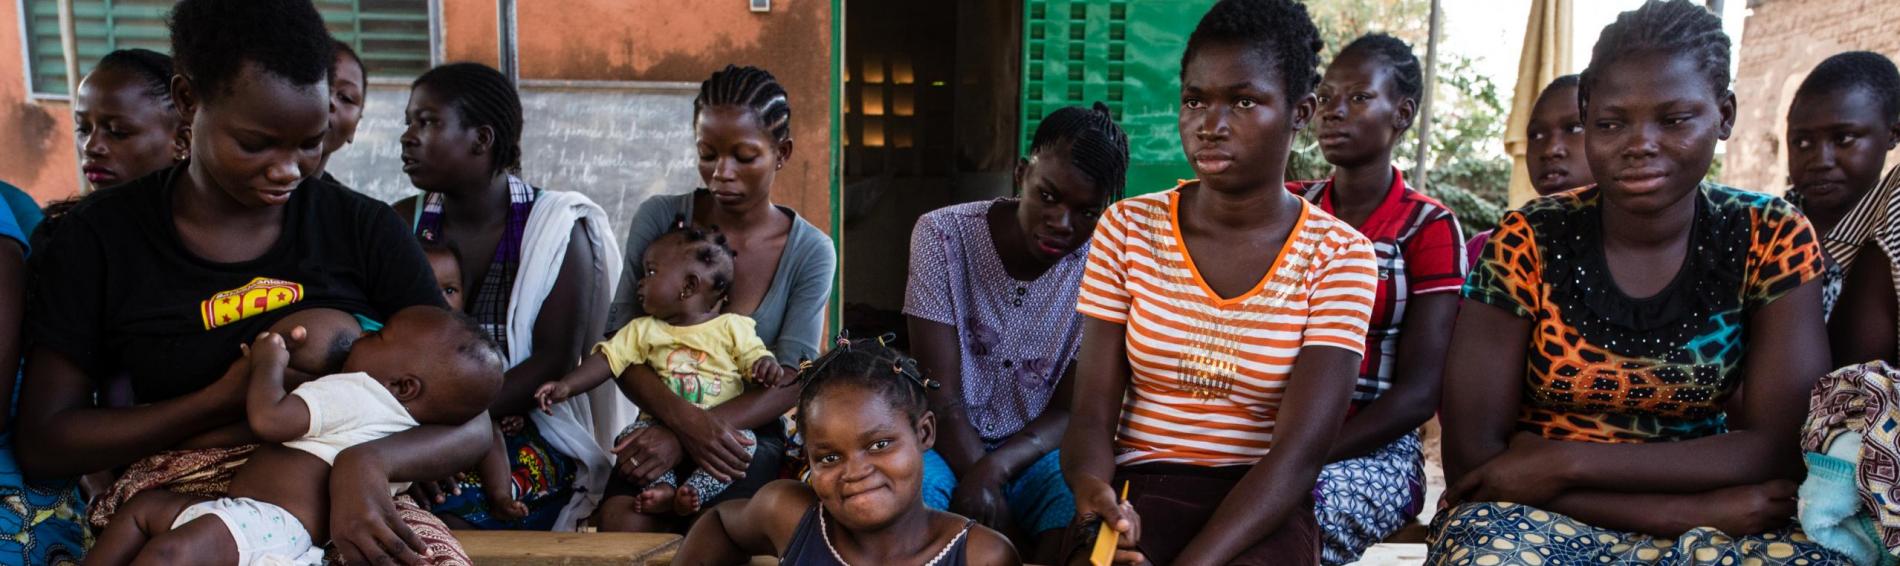 Un groupe d'enfants Burkinabés - des garçons et des filles de tous âges - sont assis face à l'objectif.